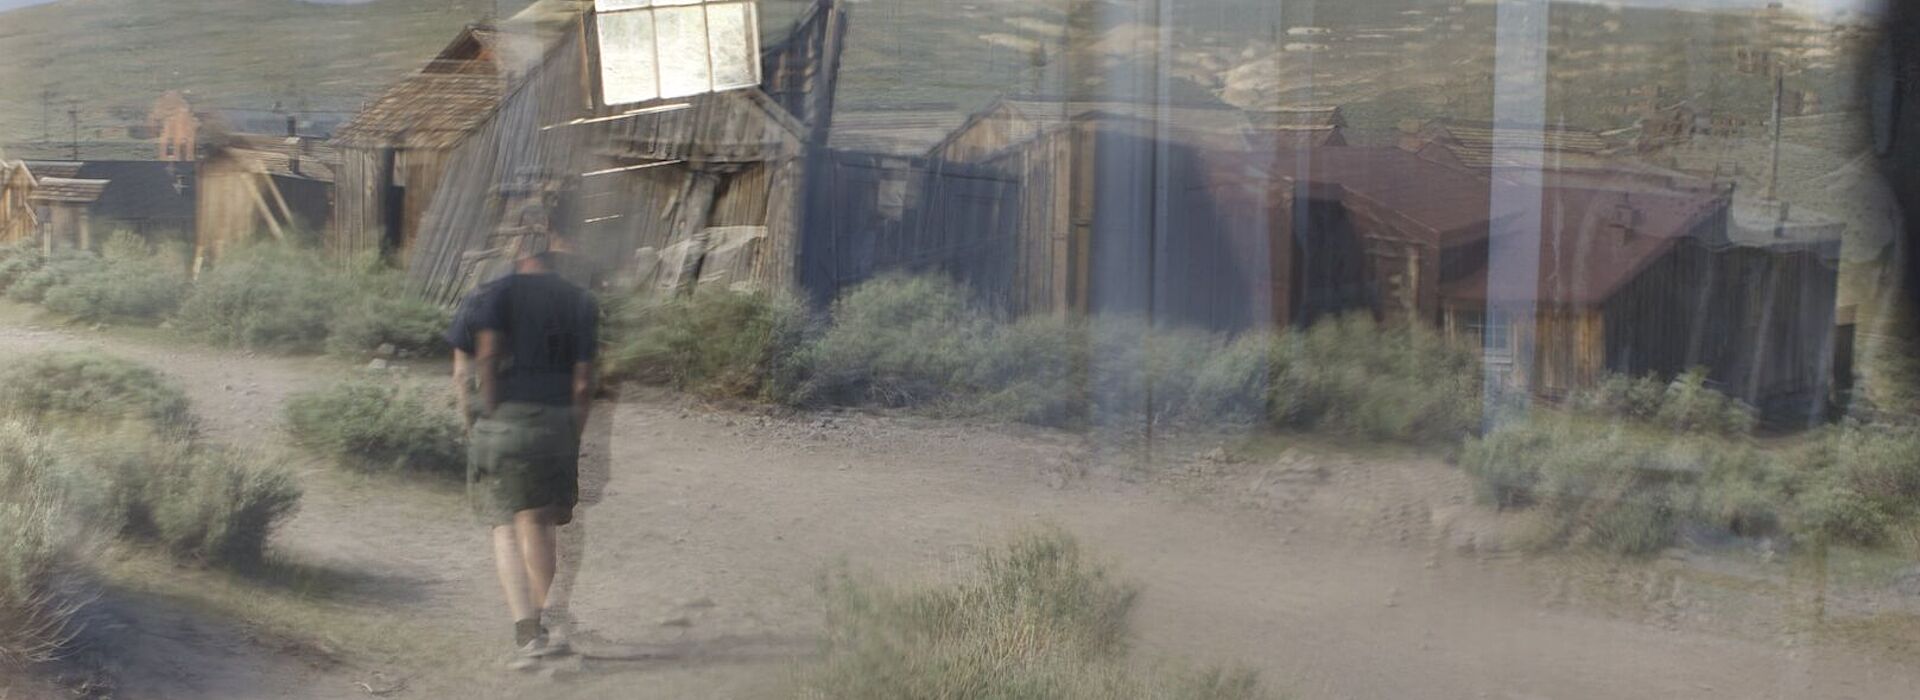 Verschwommene Fotografie, ein Mann in Freizeitkleidung geht auf einem Schotterweg auf hölzene Baracken zu.